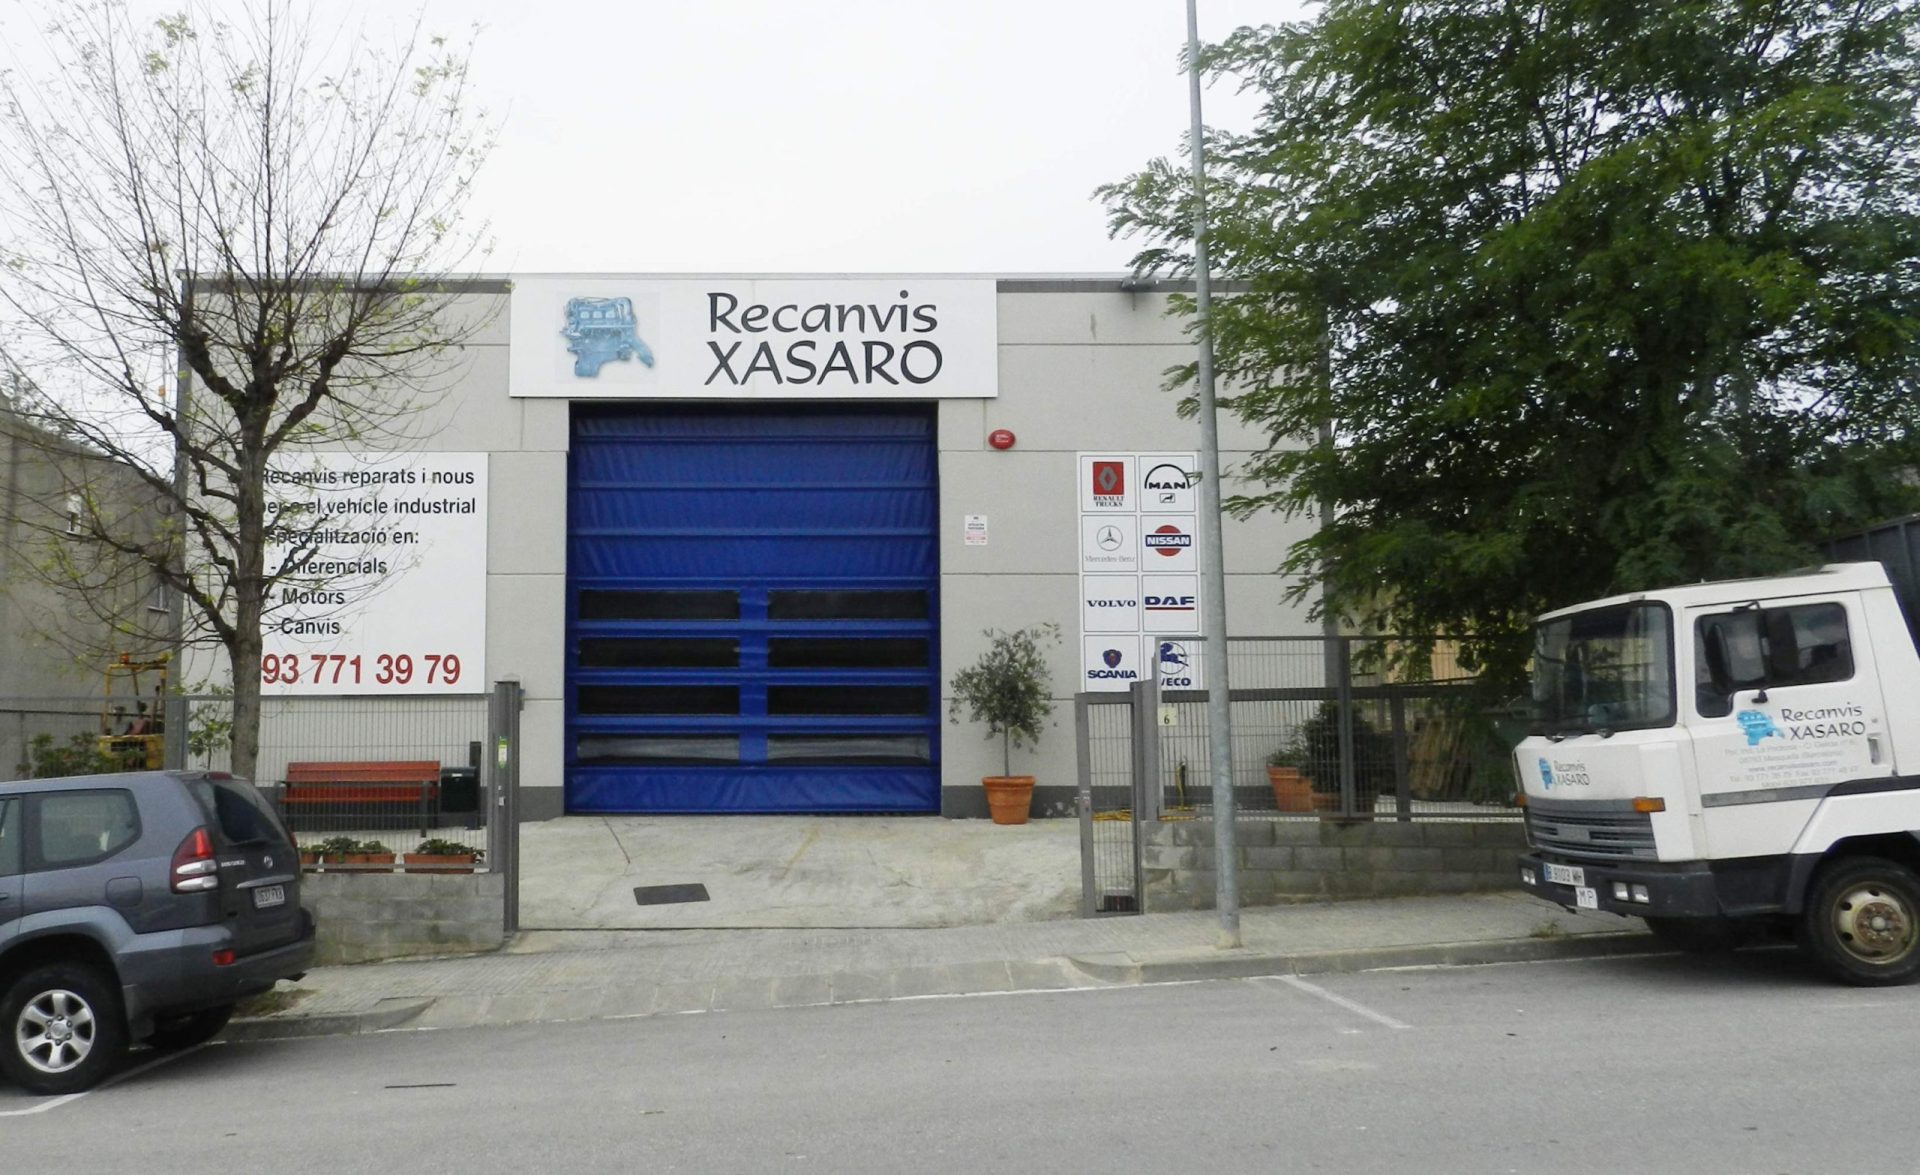 Fachada de las instalaciones de Recanvis Xasaro en Masquefa con el logo inicial en el rótulo.